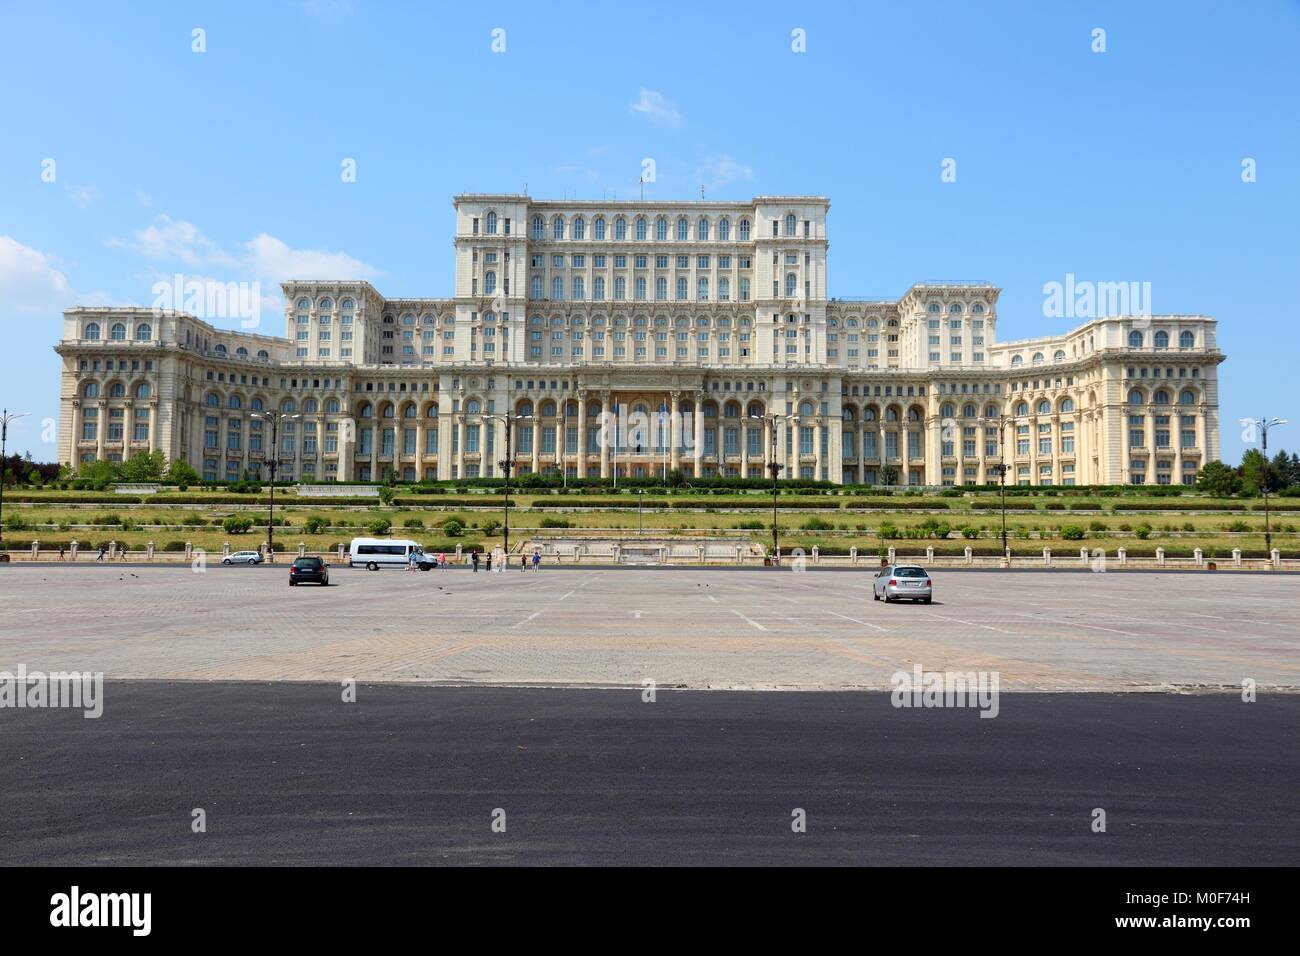 Bucharest, capital city of Romania. Palace of the Parliament (Romanian: Palatul Parlamentului). Stock Photo